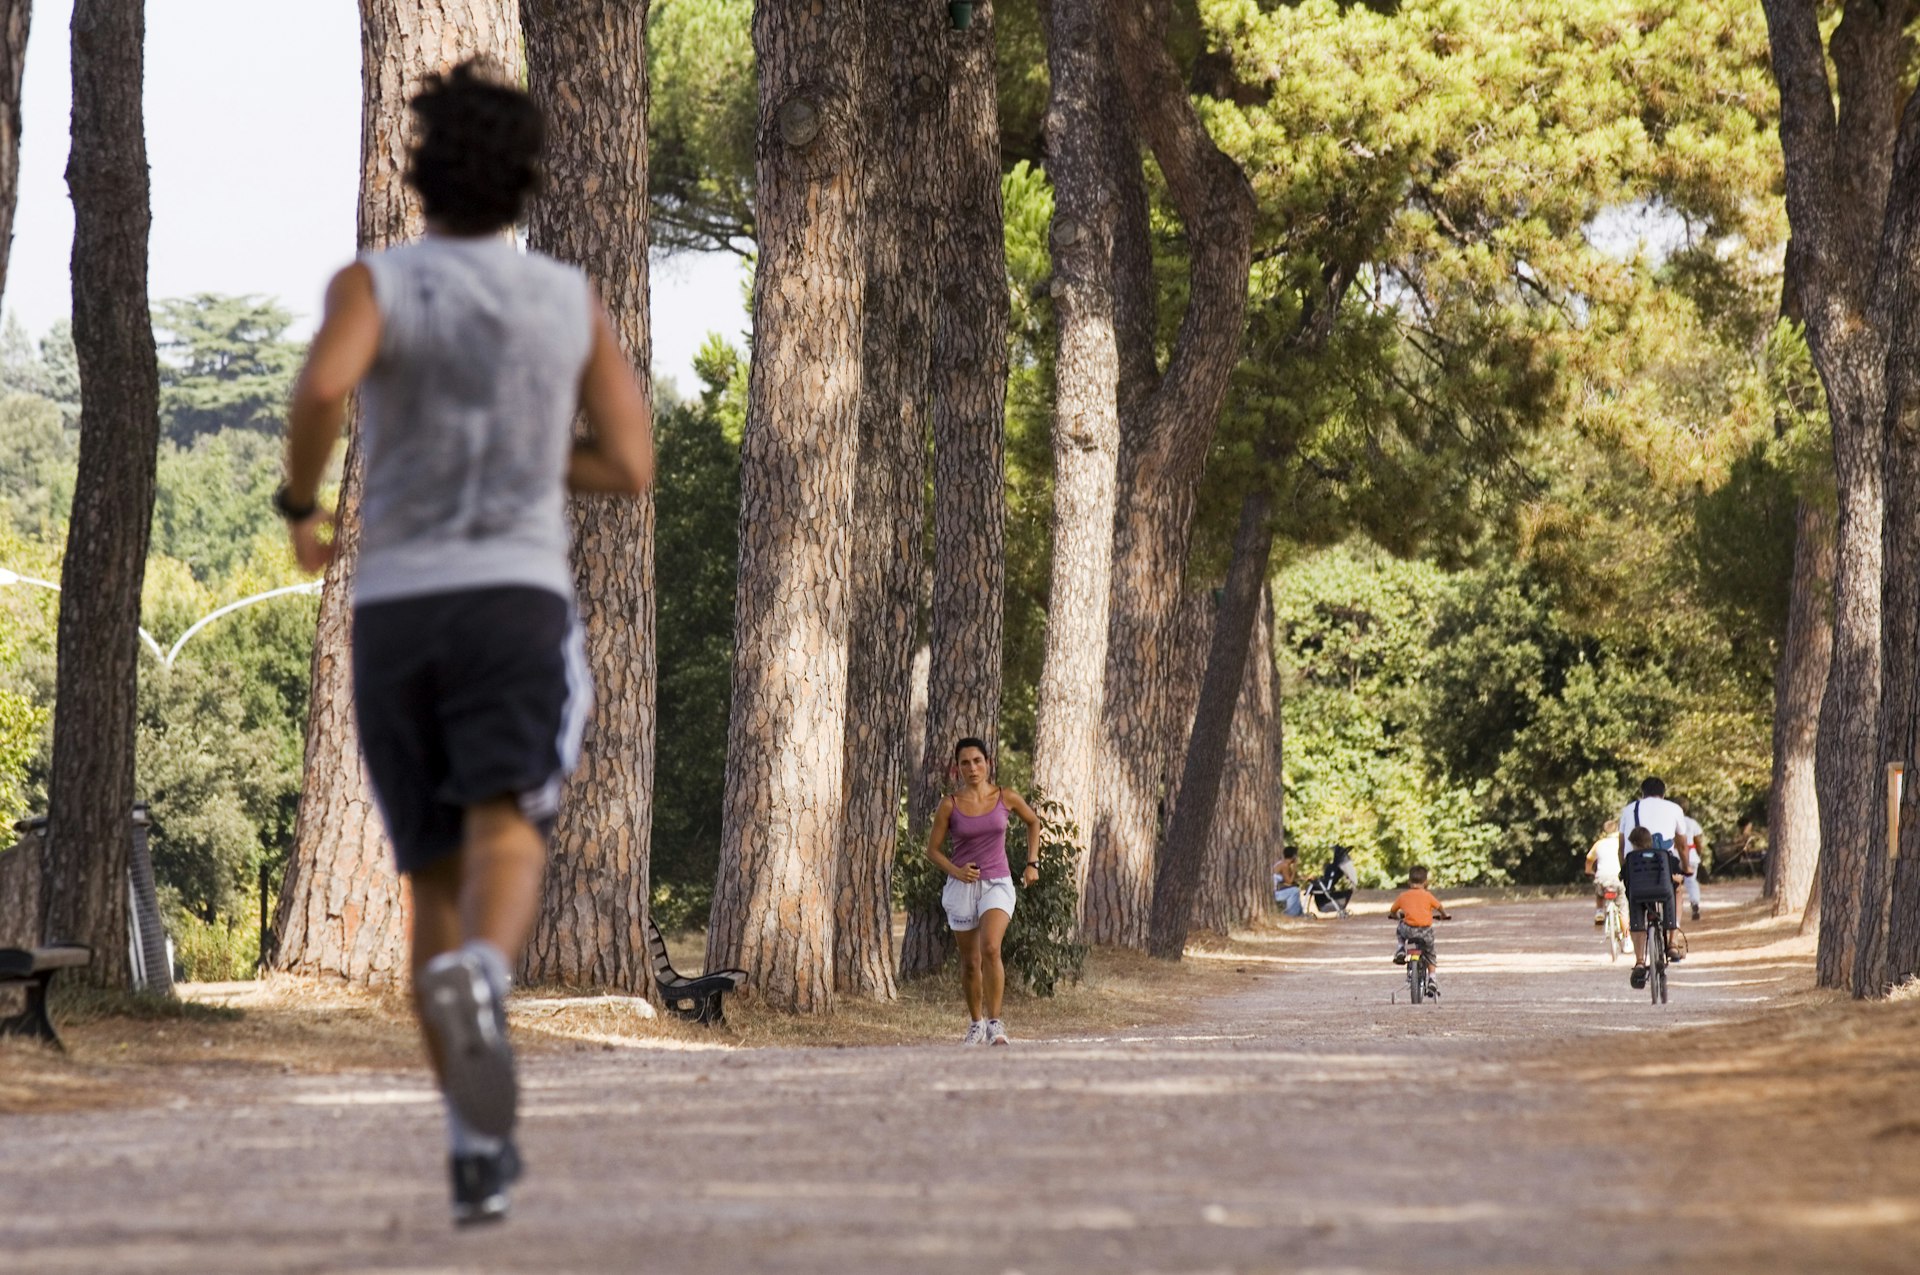 A man jogs at Villa Doria Pamphilj